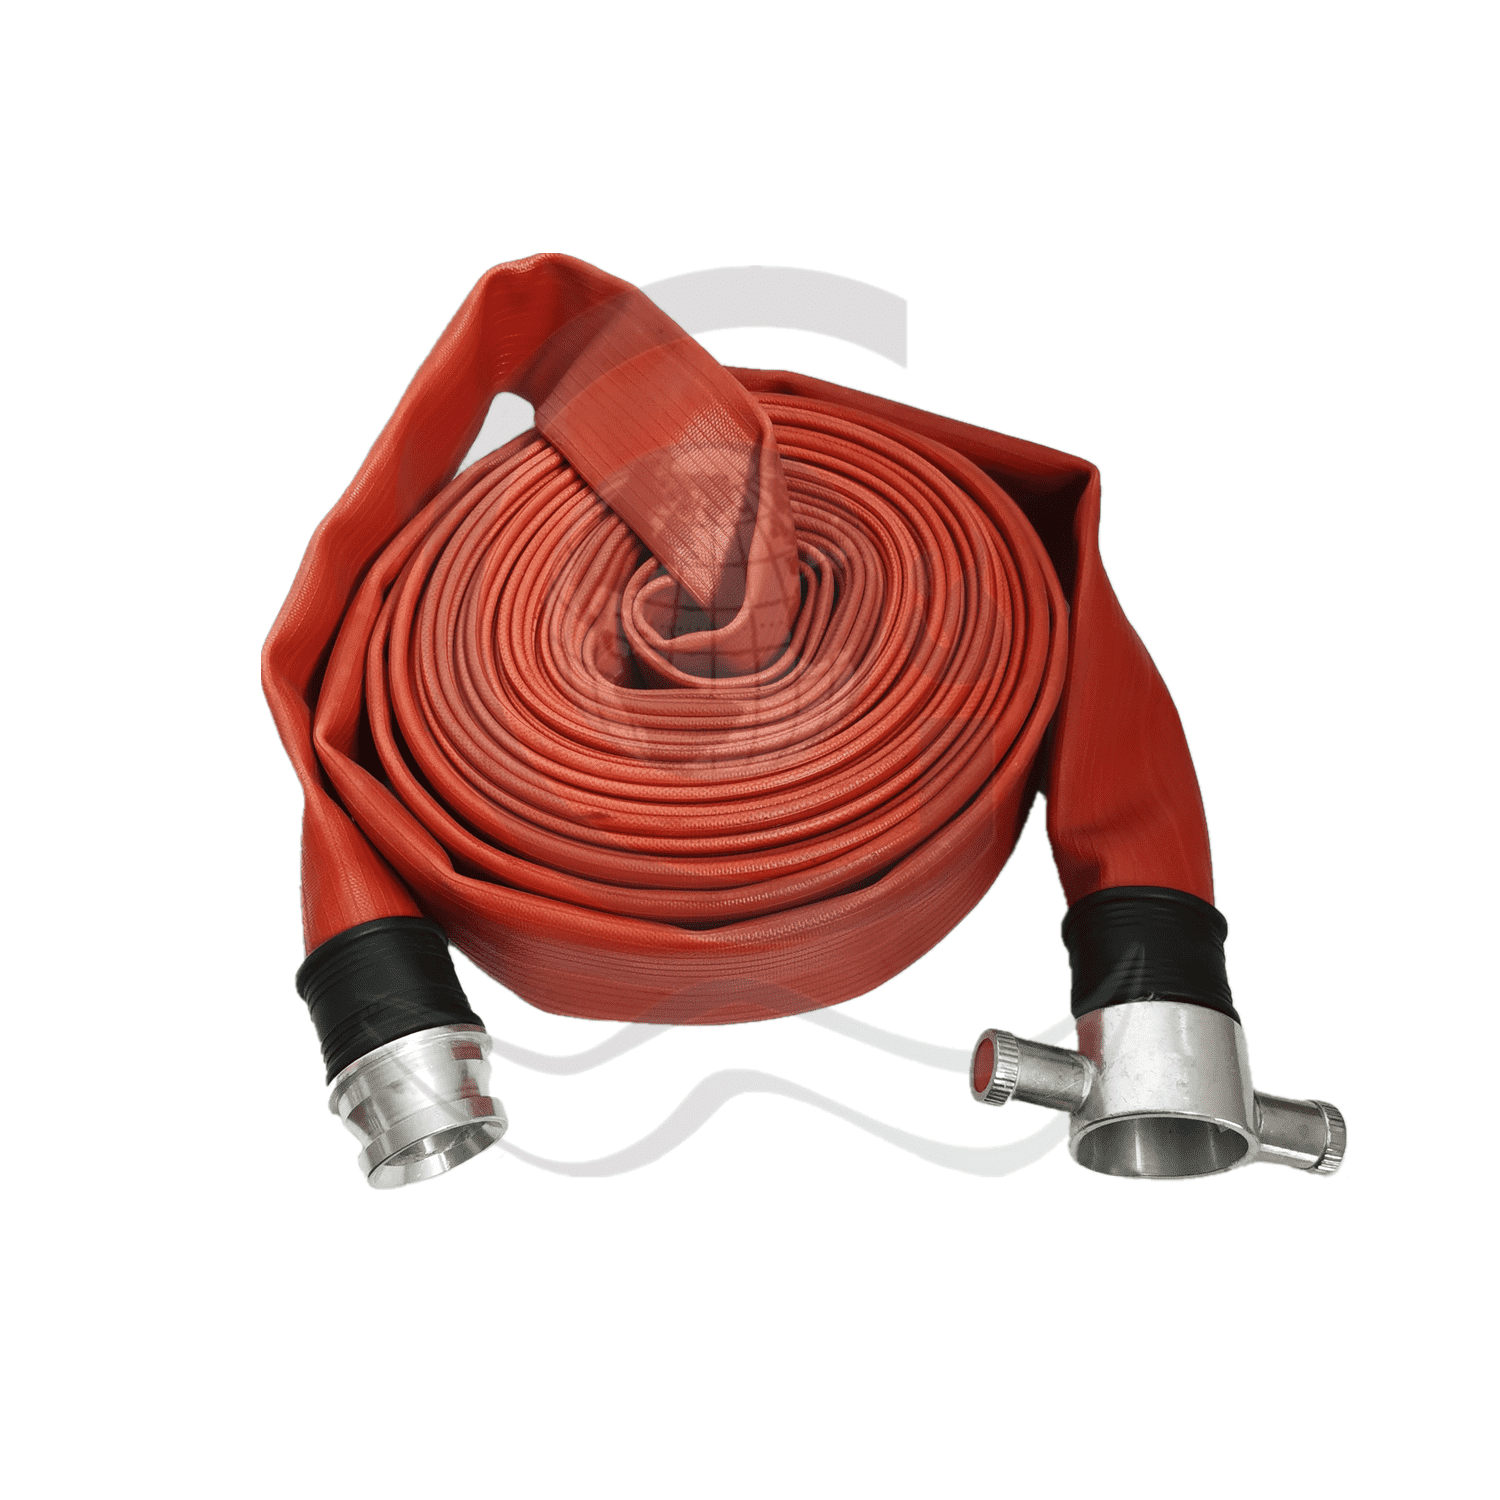 China Good Quality Quick Coupling Fire Hose - duraline fire hose